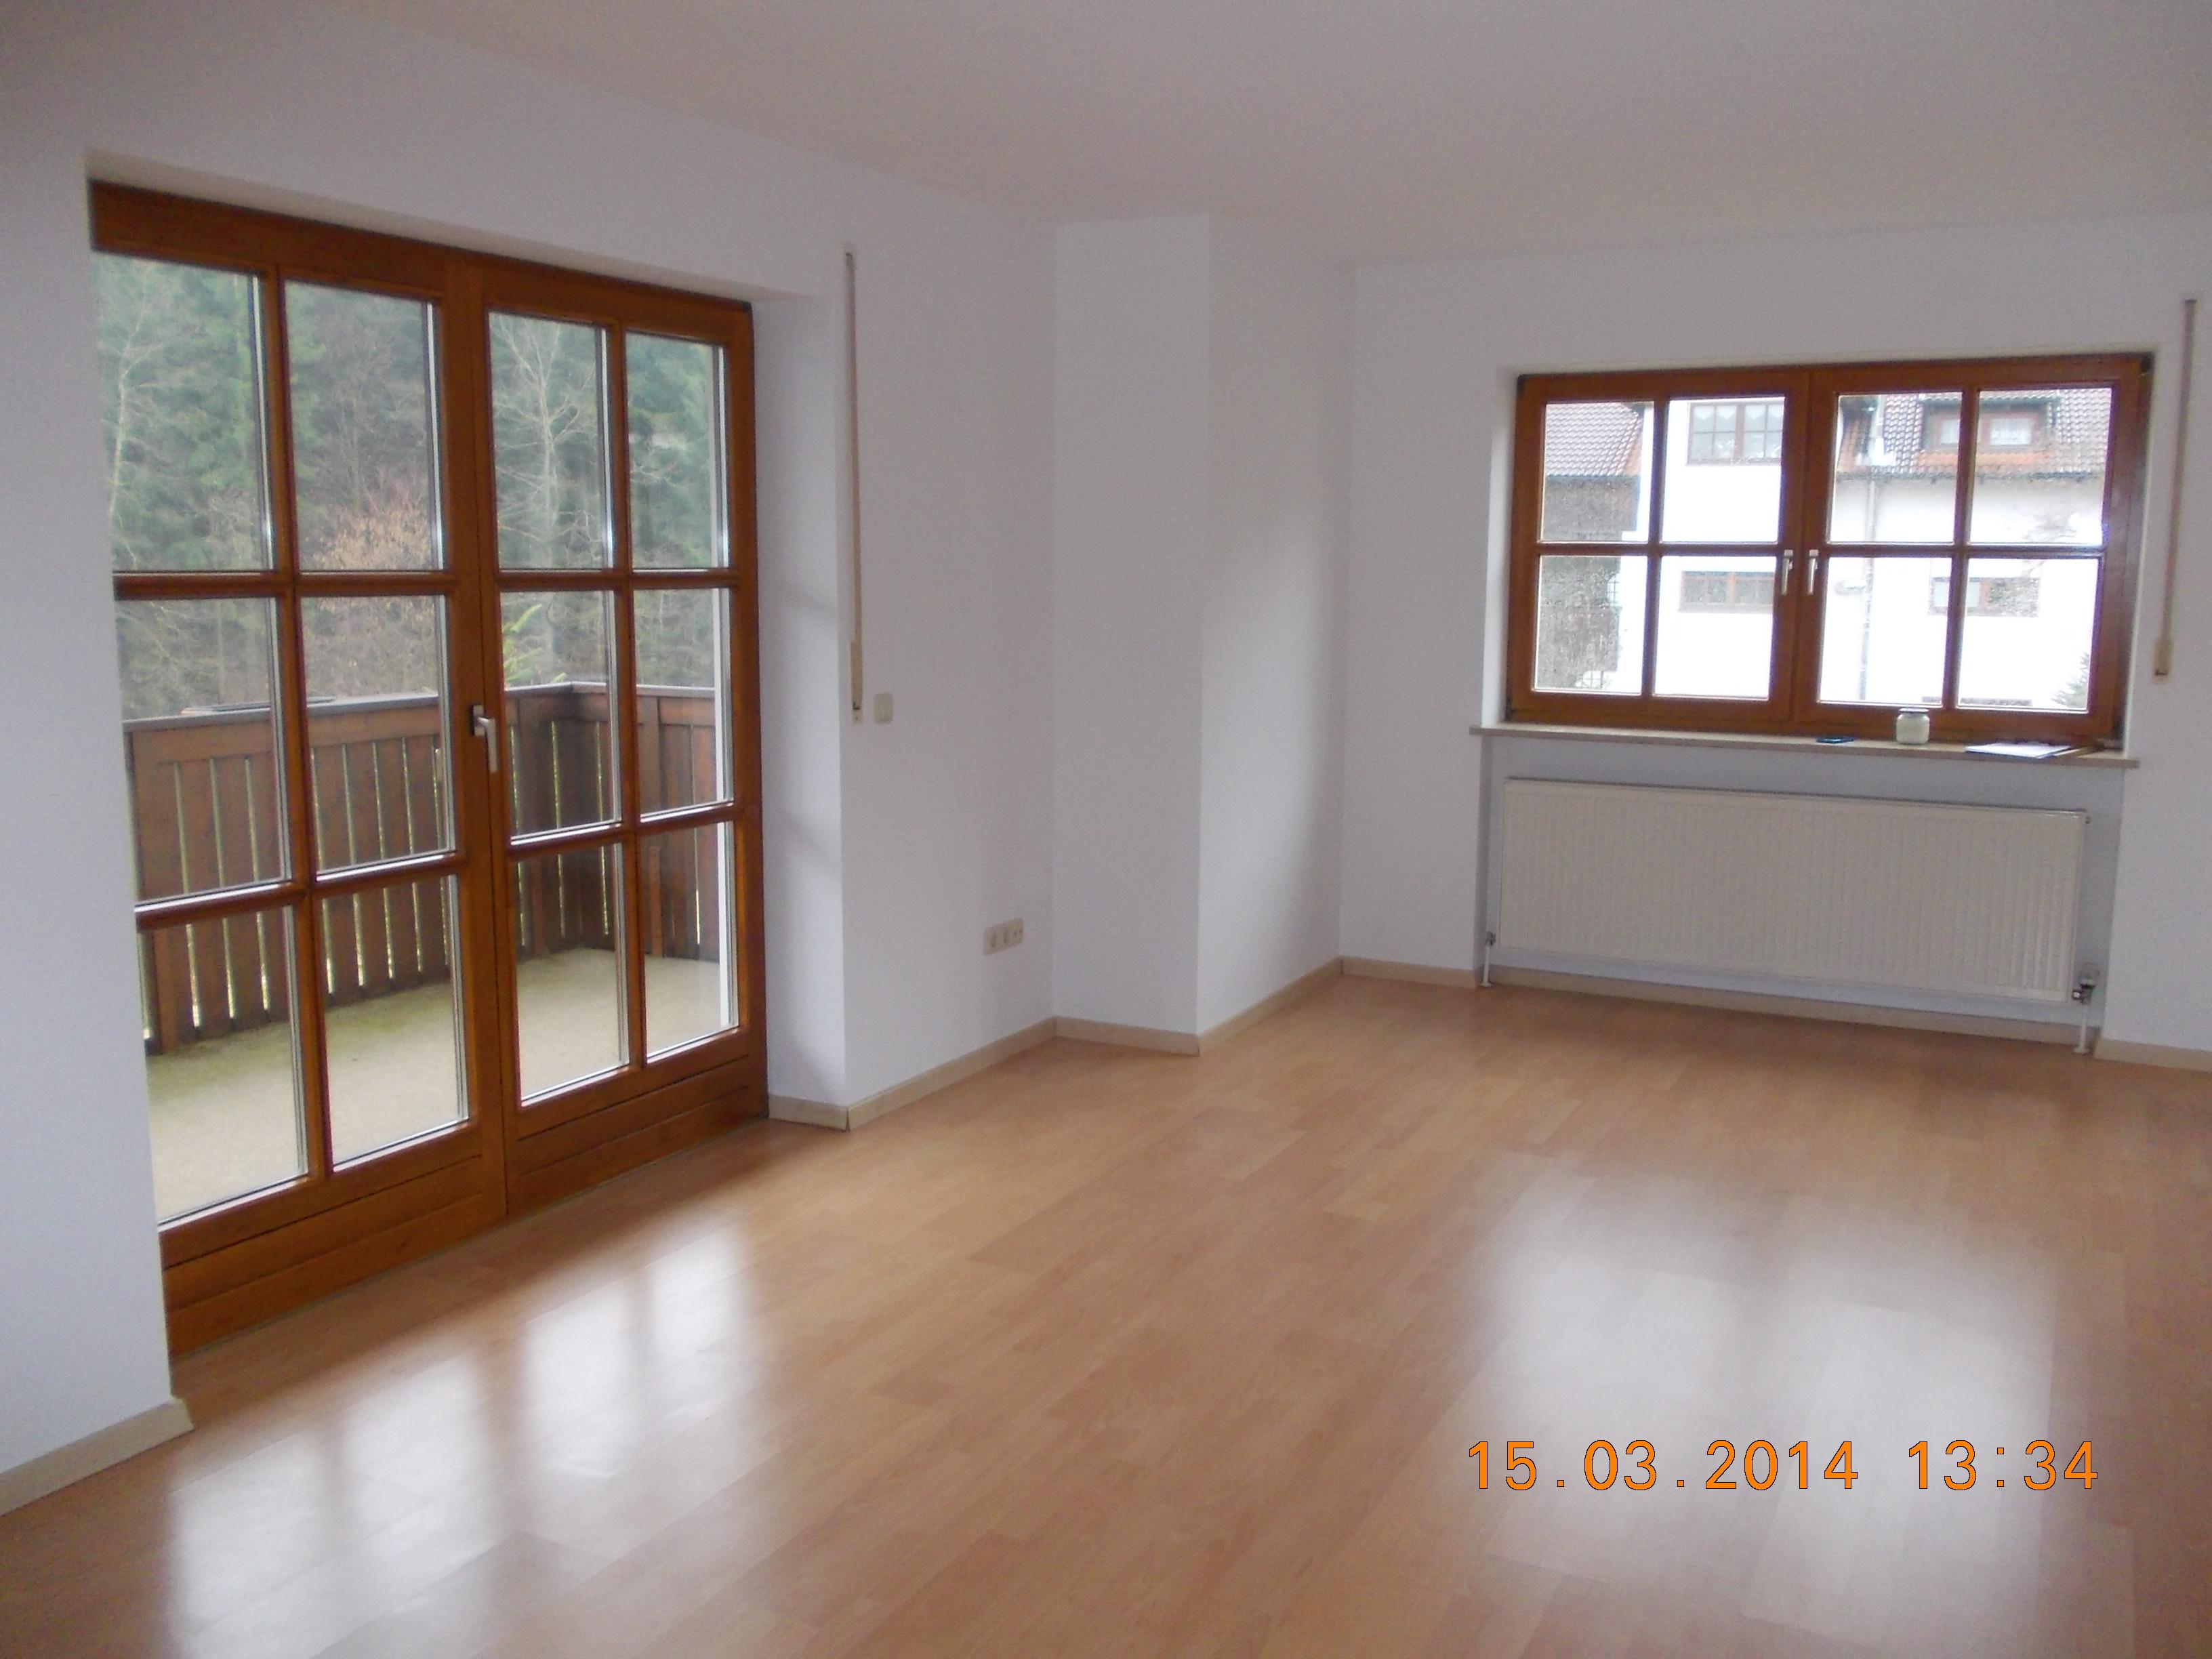 Exklusive, neuwertige 3-Zimmer-Wohnung mit Balkon in Salzweg (Passau)